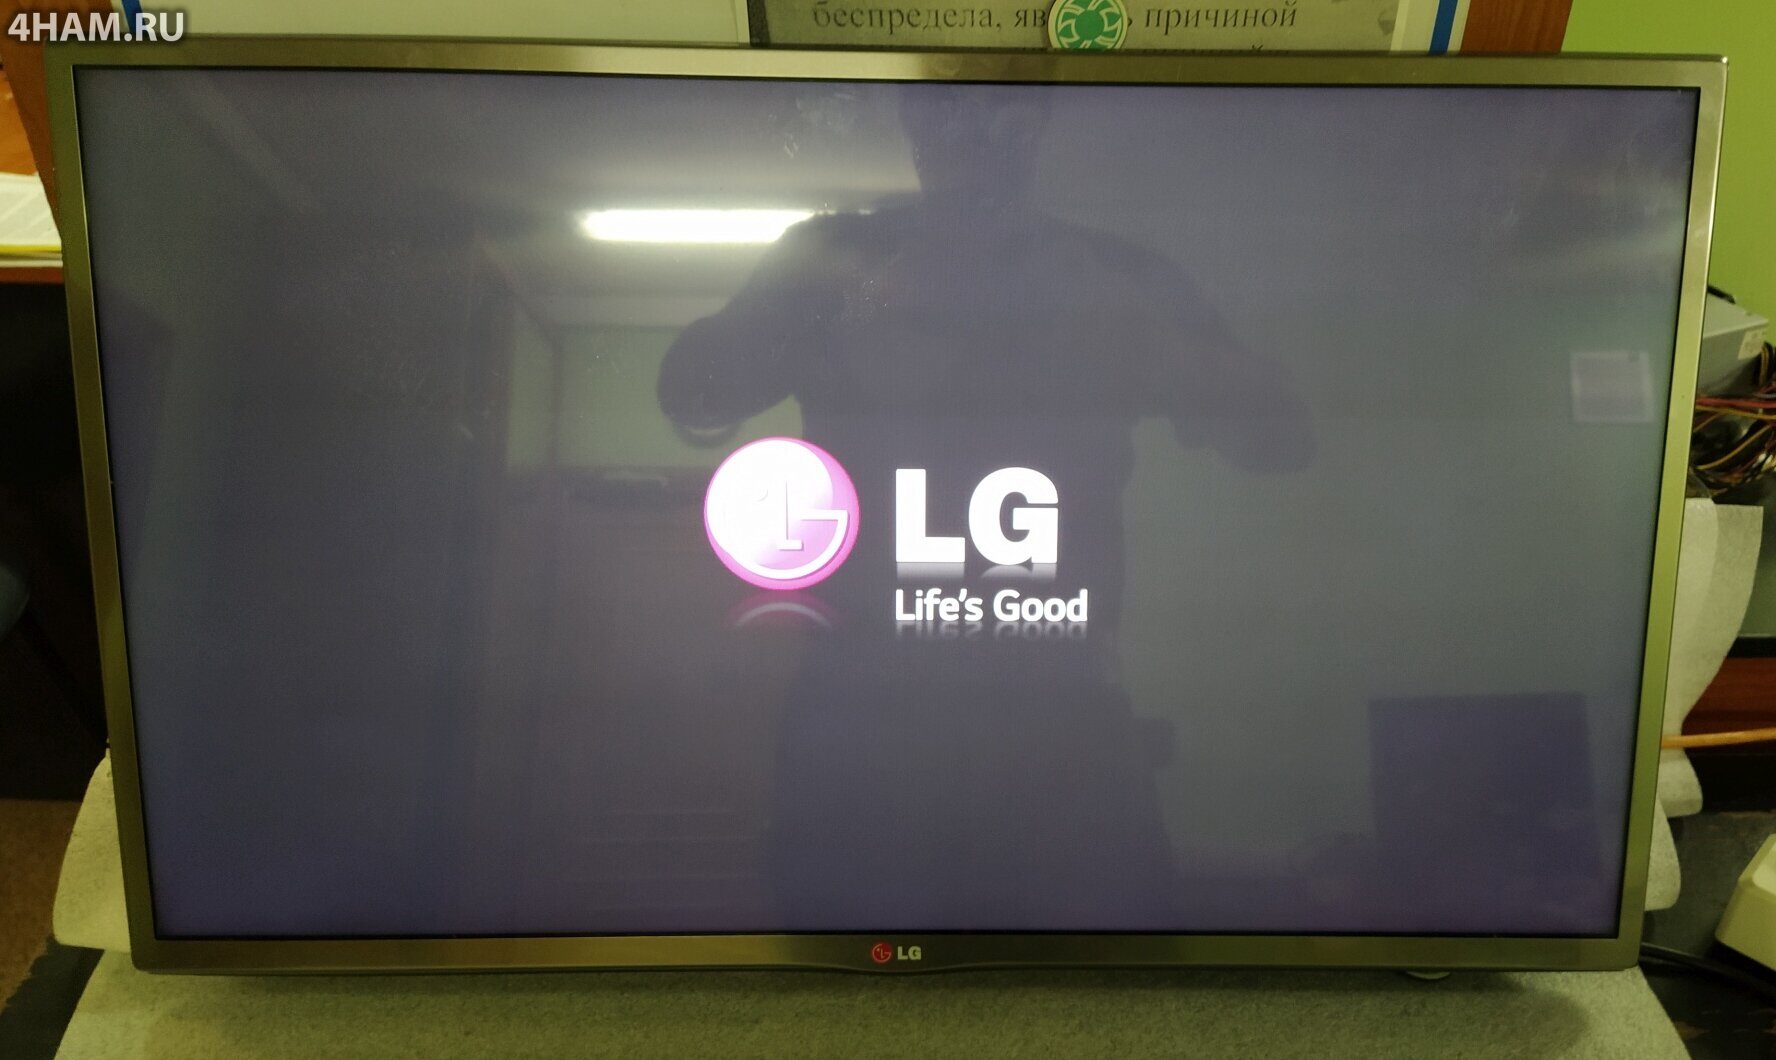 Ремонт телевизора LG своими руками